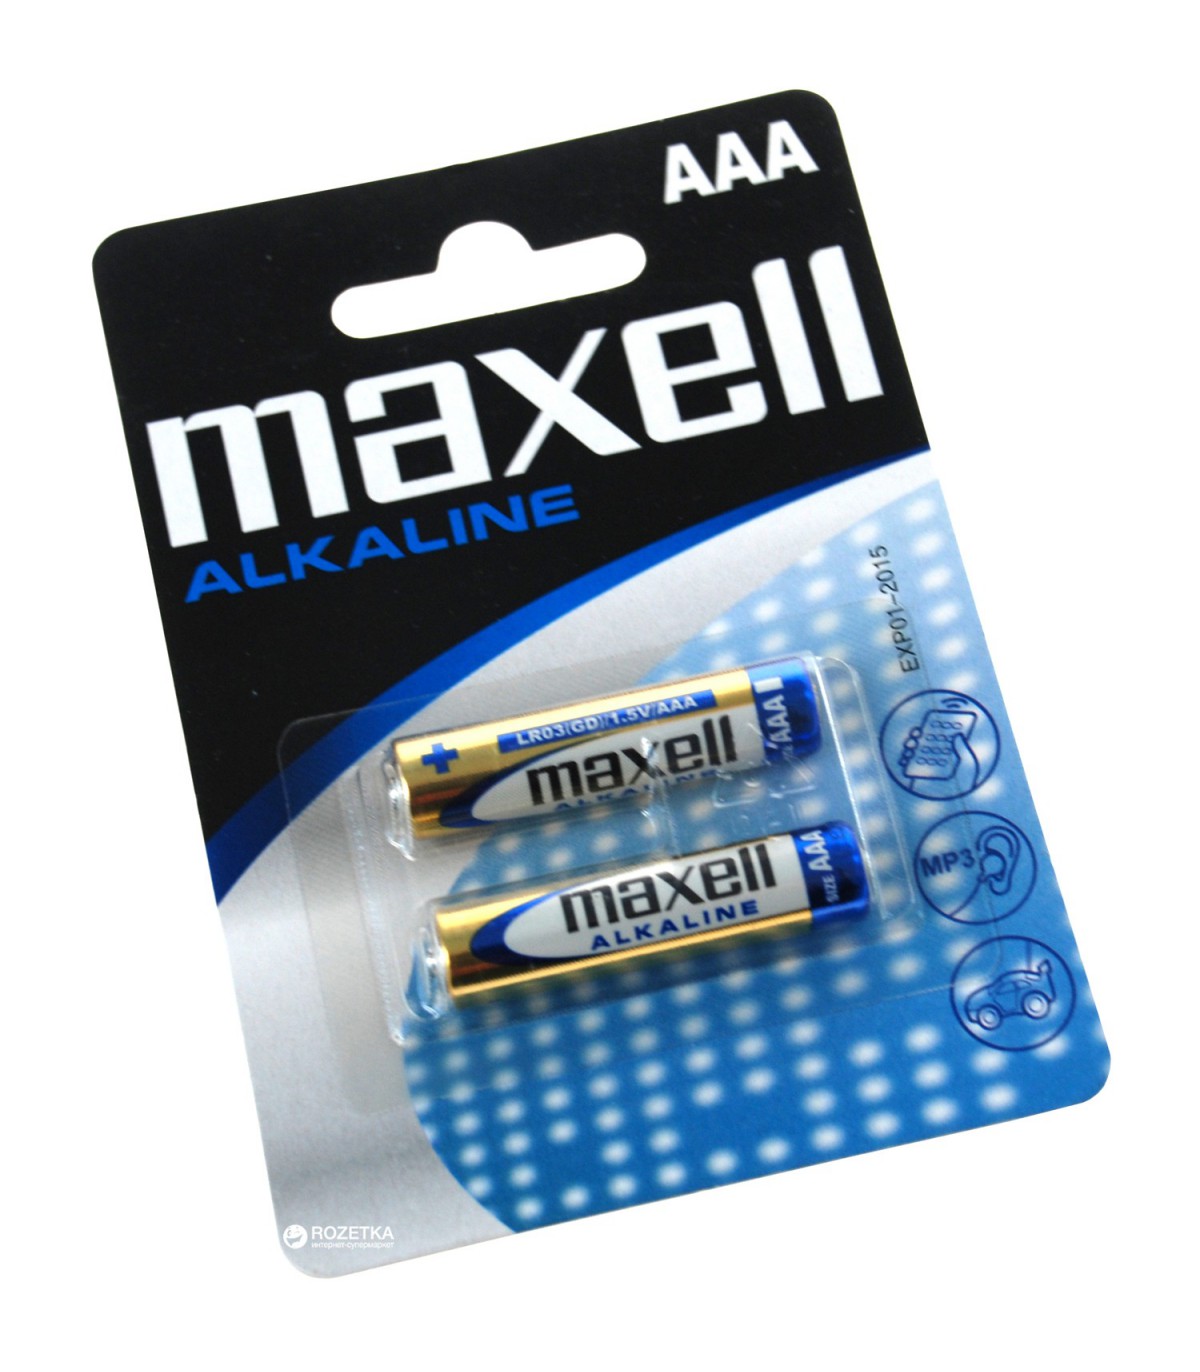 Элемент 3 батареи. Батарейка Maxell Alkaline lr03. Батарейка Maxell Alkaline lr03 (AAA). Maxell lr3 Alkaline (5+5)BL. Батарейка (мизинчиковая) Maxell lr03/5+5bl AAA Alkaline штрихкод.